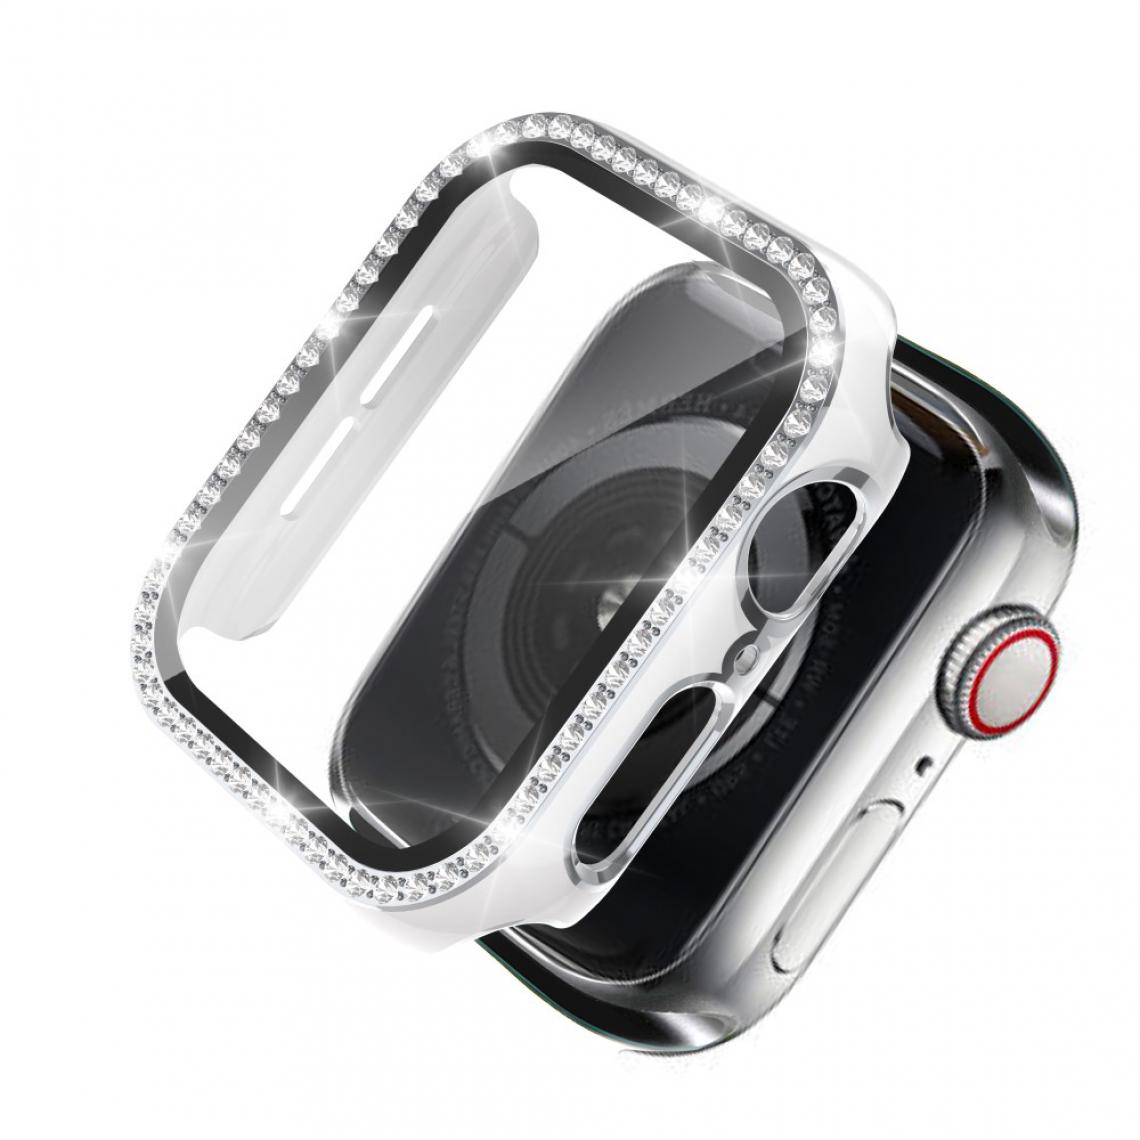 Other - Coque en TPU Strass en cristal de galvanoplastie bicolore blanc/argent pour votre Apple Watch 1/2/3 42mm - Accessoires bracelet connecté